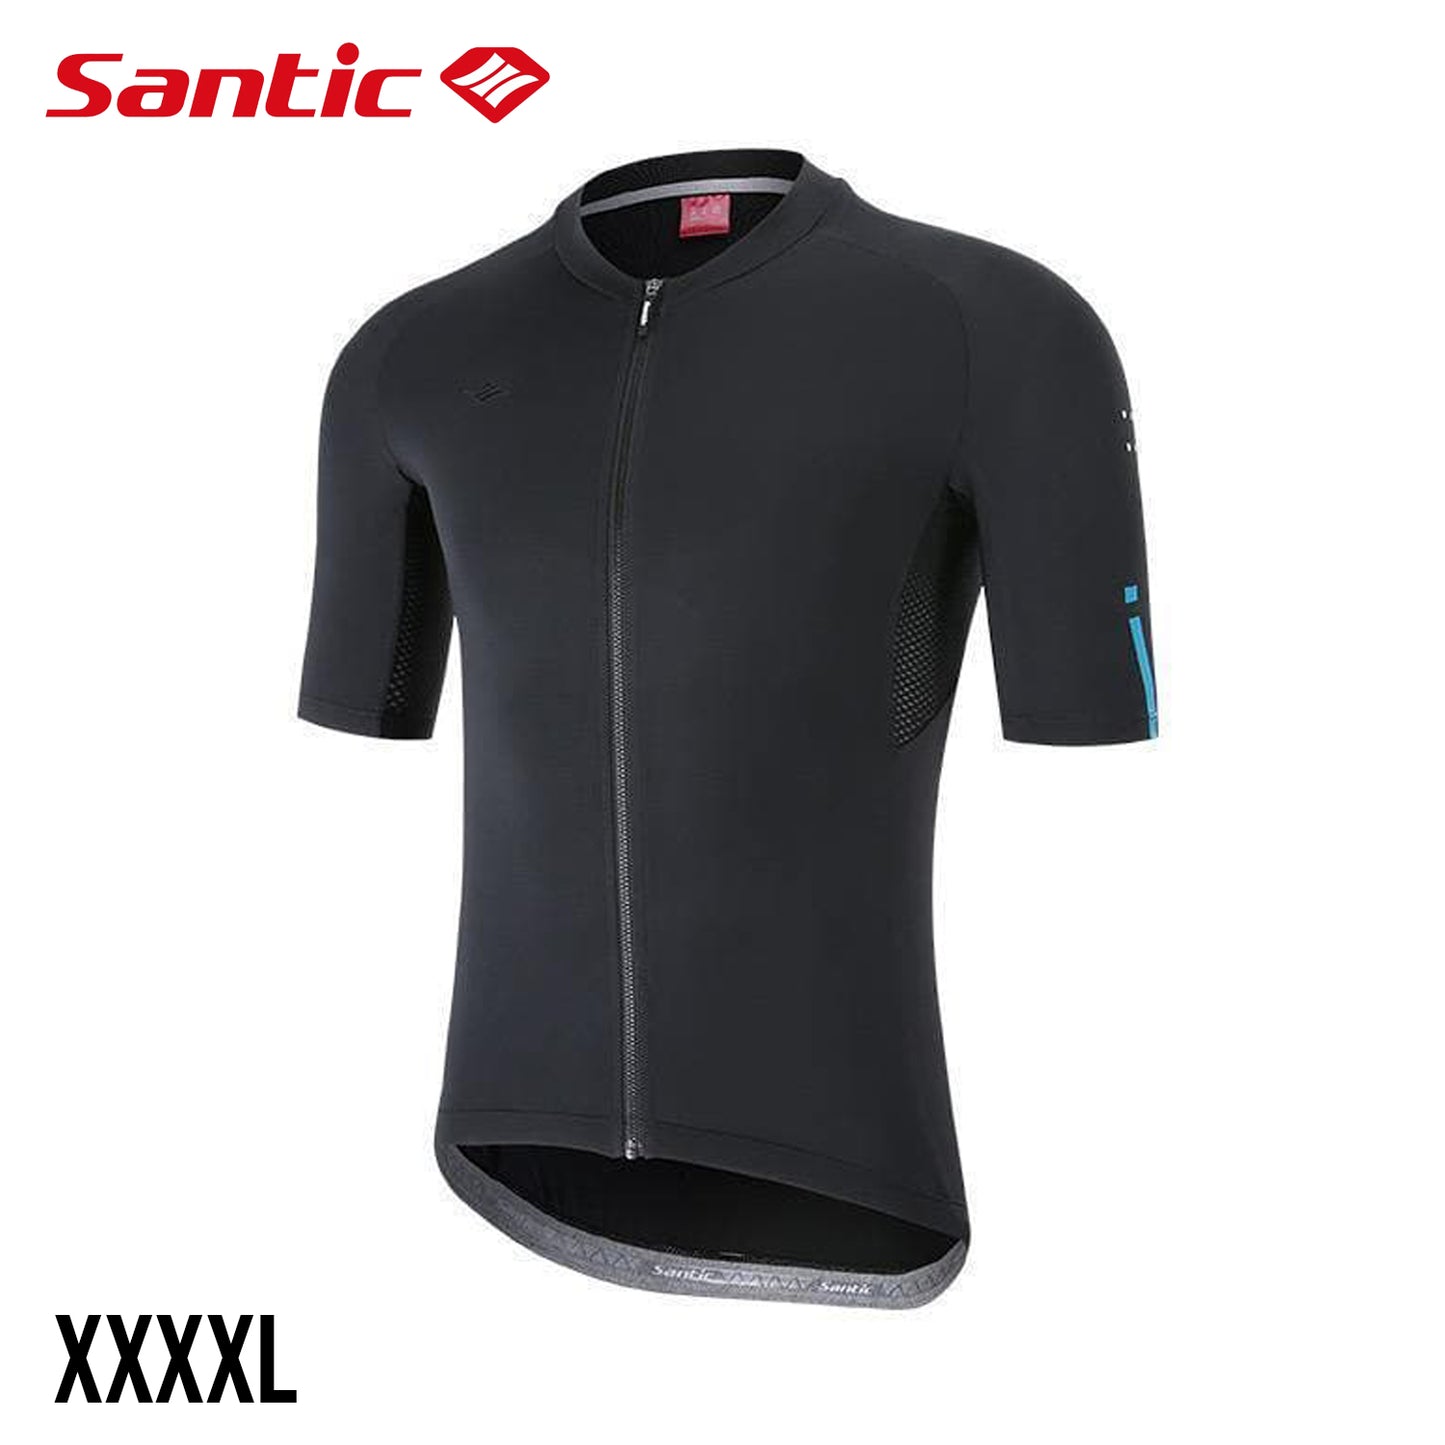 Santic Azuni Men's Short Sleeve Summer Jersey - Black